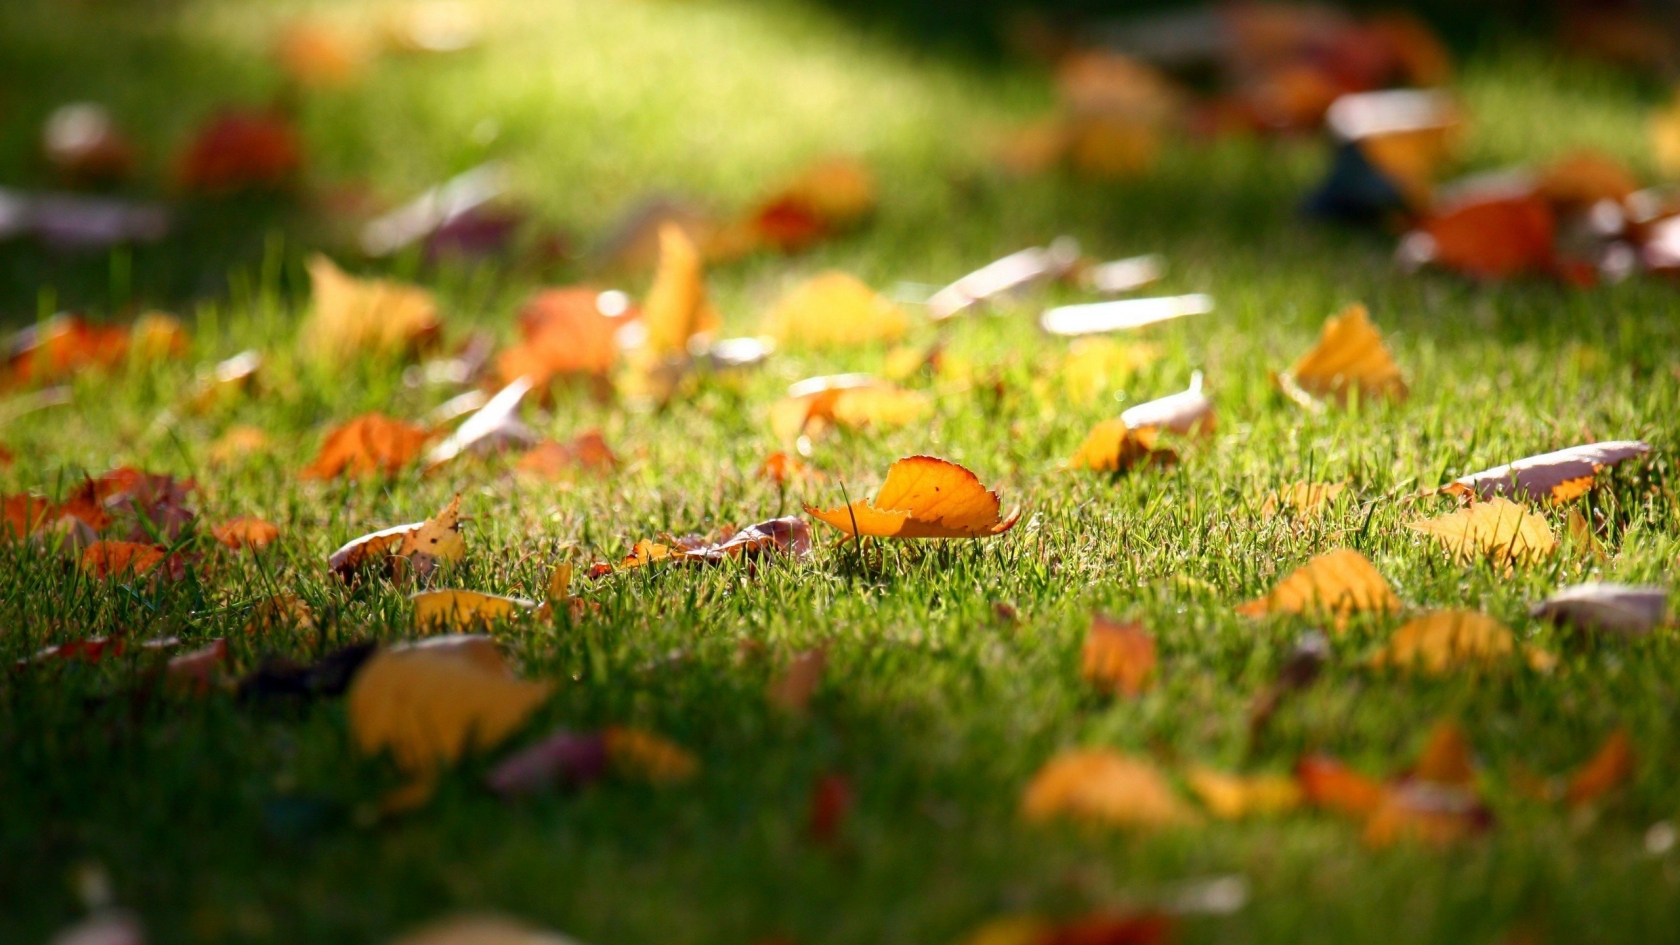 Carpet of Leaves for 1680 x 945 HDTV resolution